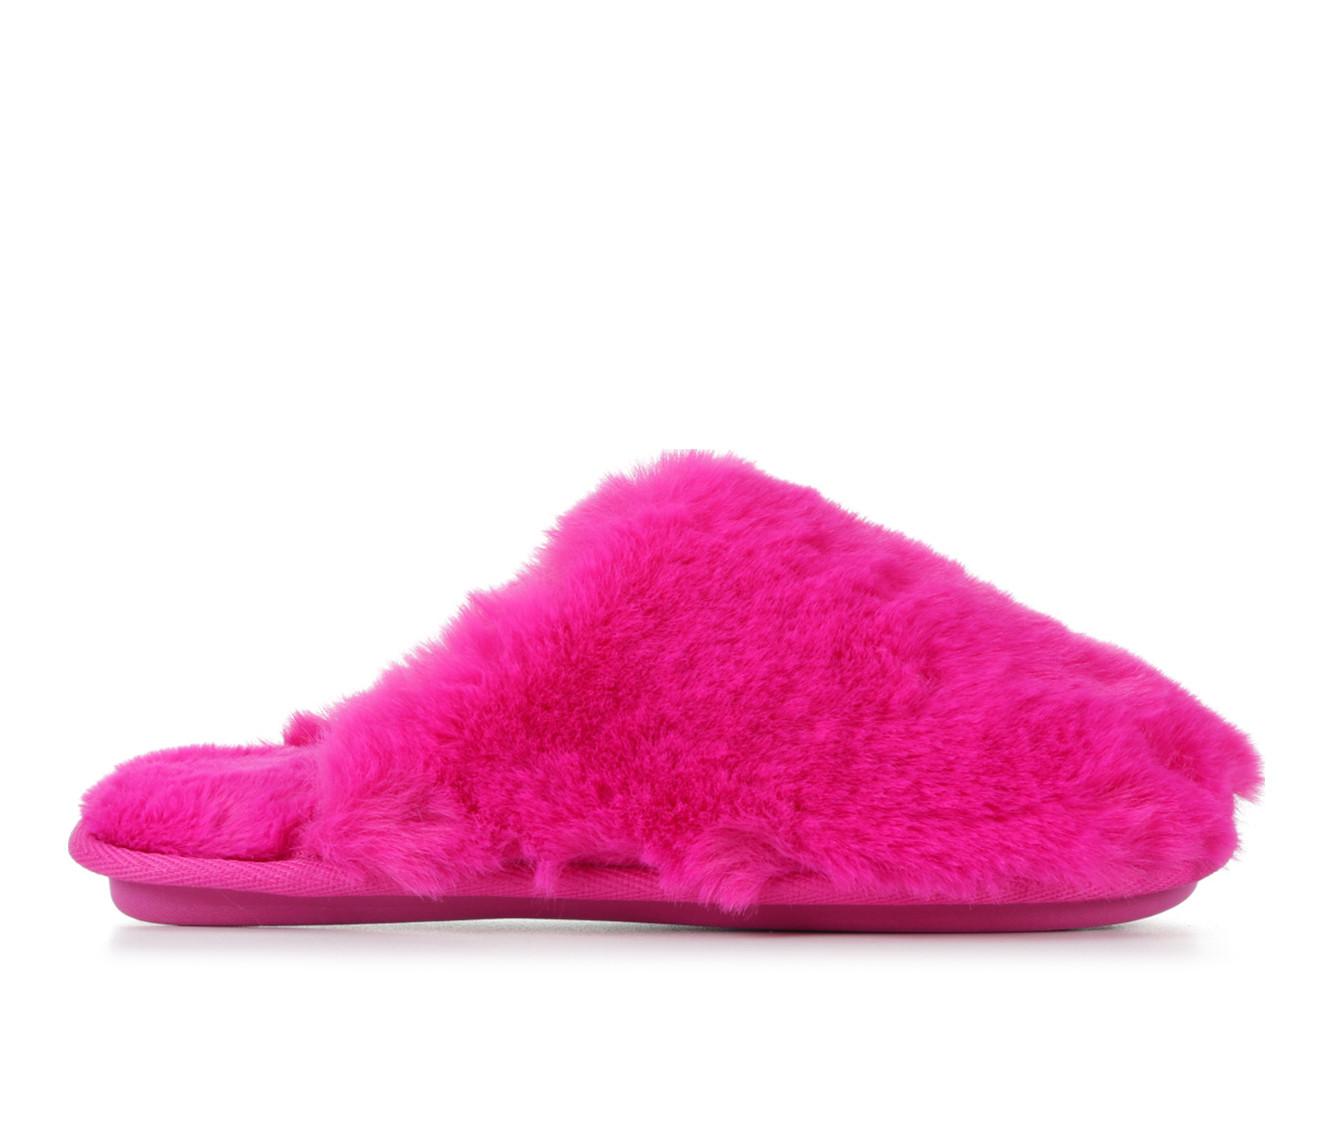 Jessica Simpson Women's Plush Faux Fur Fuzzy Slide On Open Toe